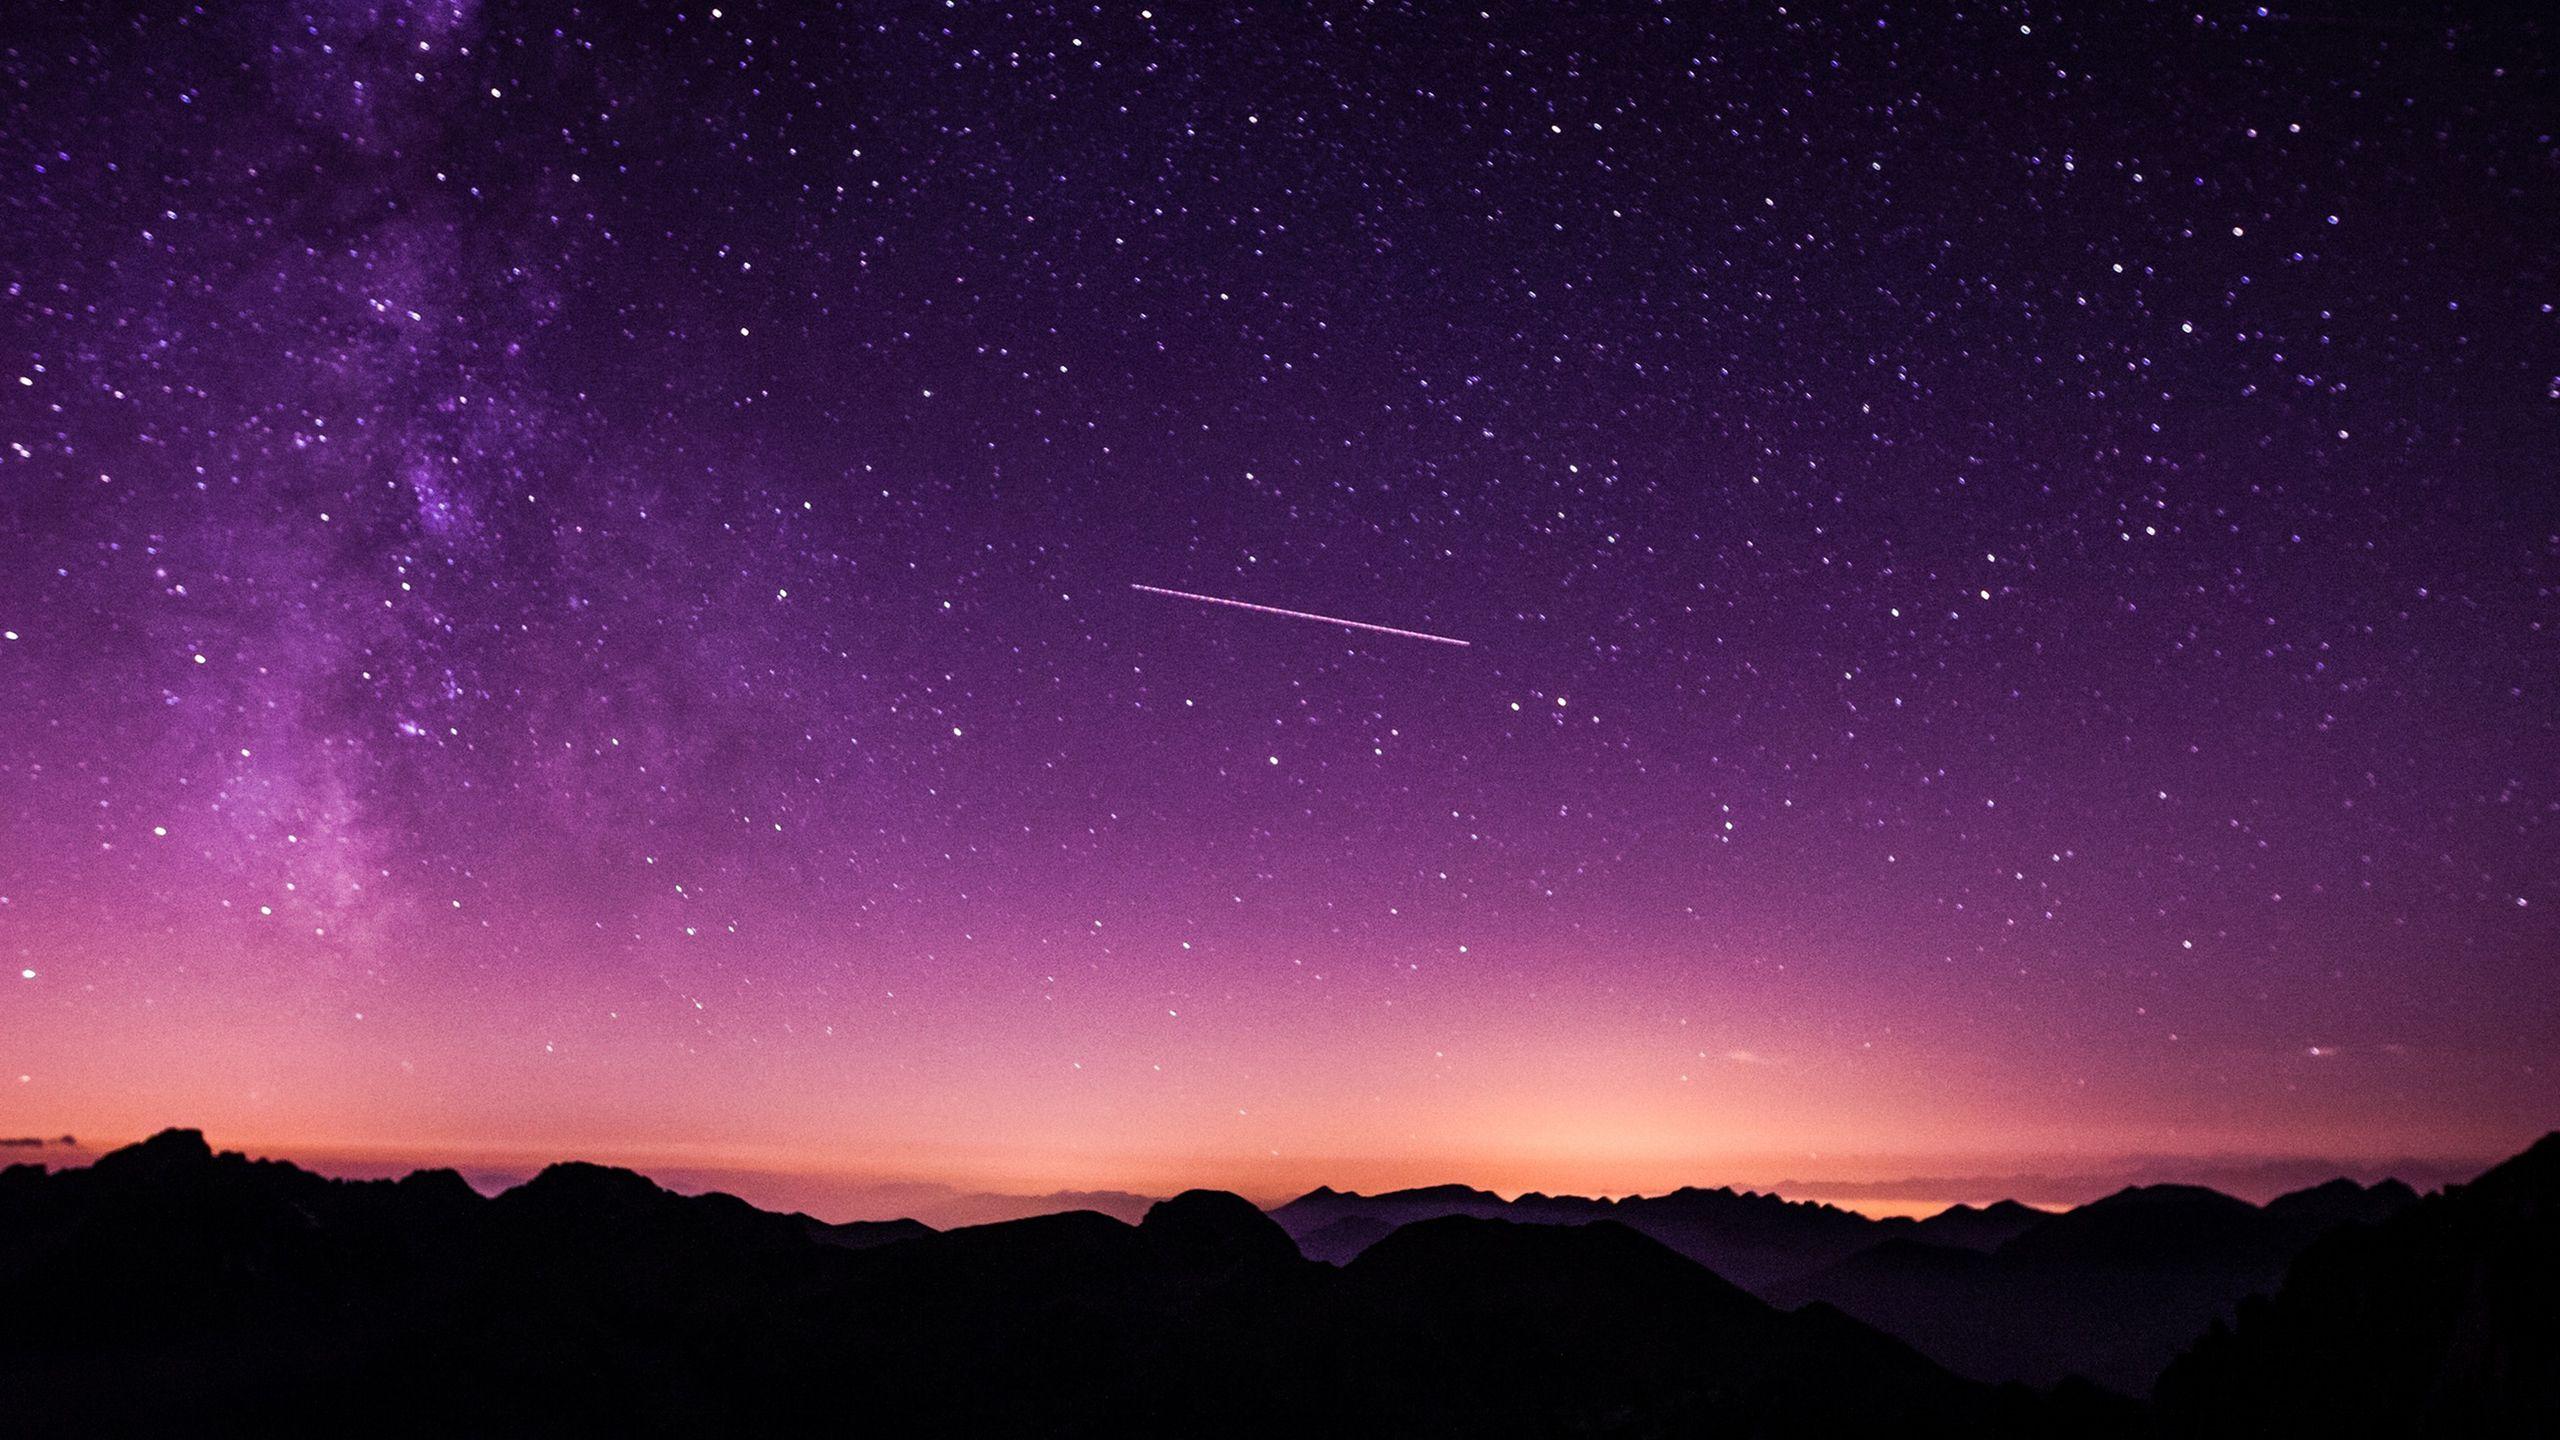 Nhiều bức ảnh nền bầu trời đêm đẹp mê hồn sẽ mang đến cho bạn trải nghiệm không thể quên. Hãy tải và thưởng thức những bức hình này để tận hưởng không gian thật đẹp trong mỗi lần mở máy tính.